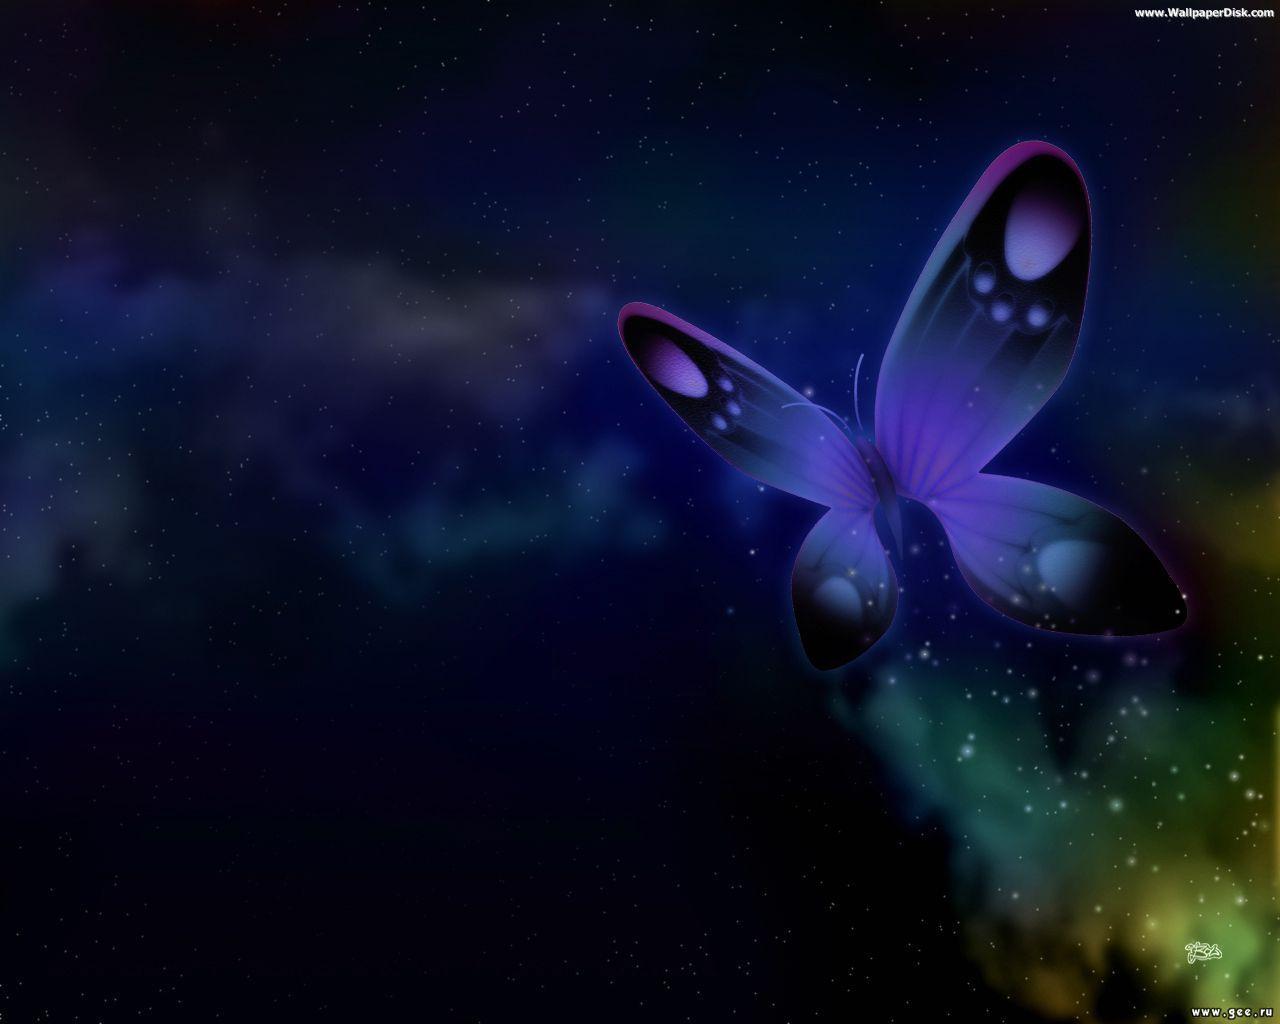 Free 3D Butterfly Desktop Wallpaper